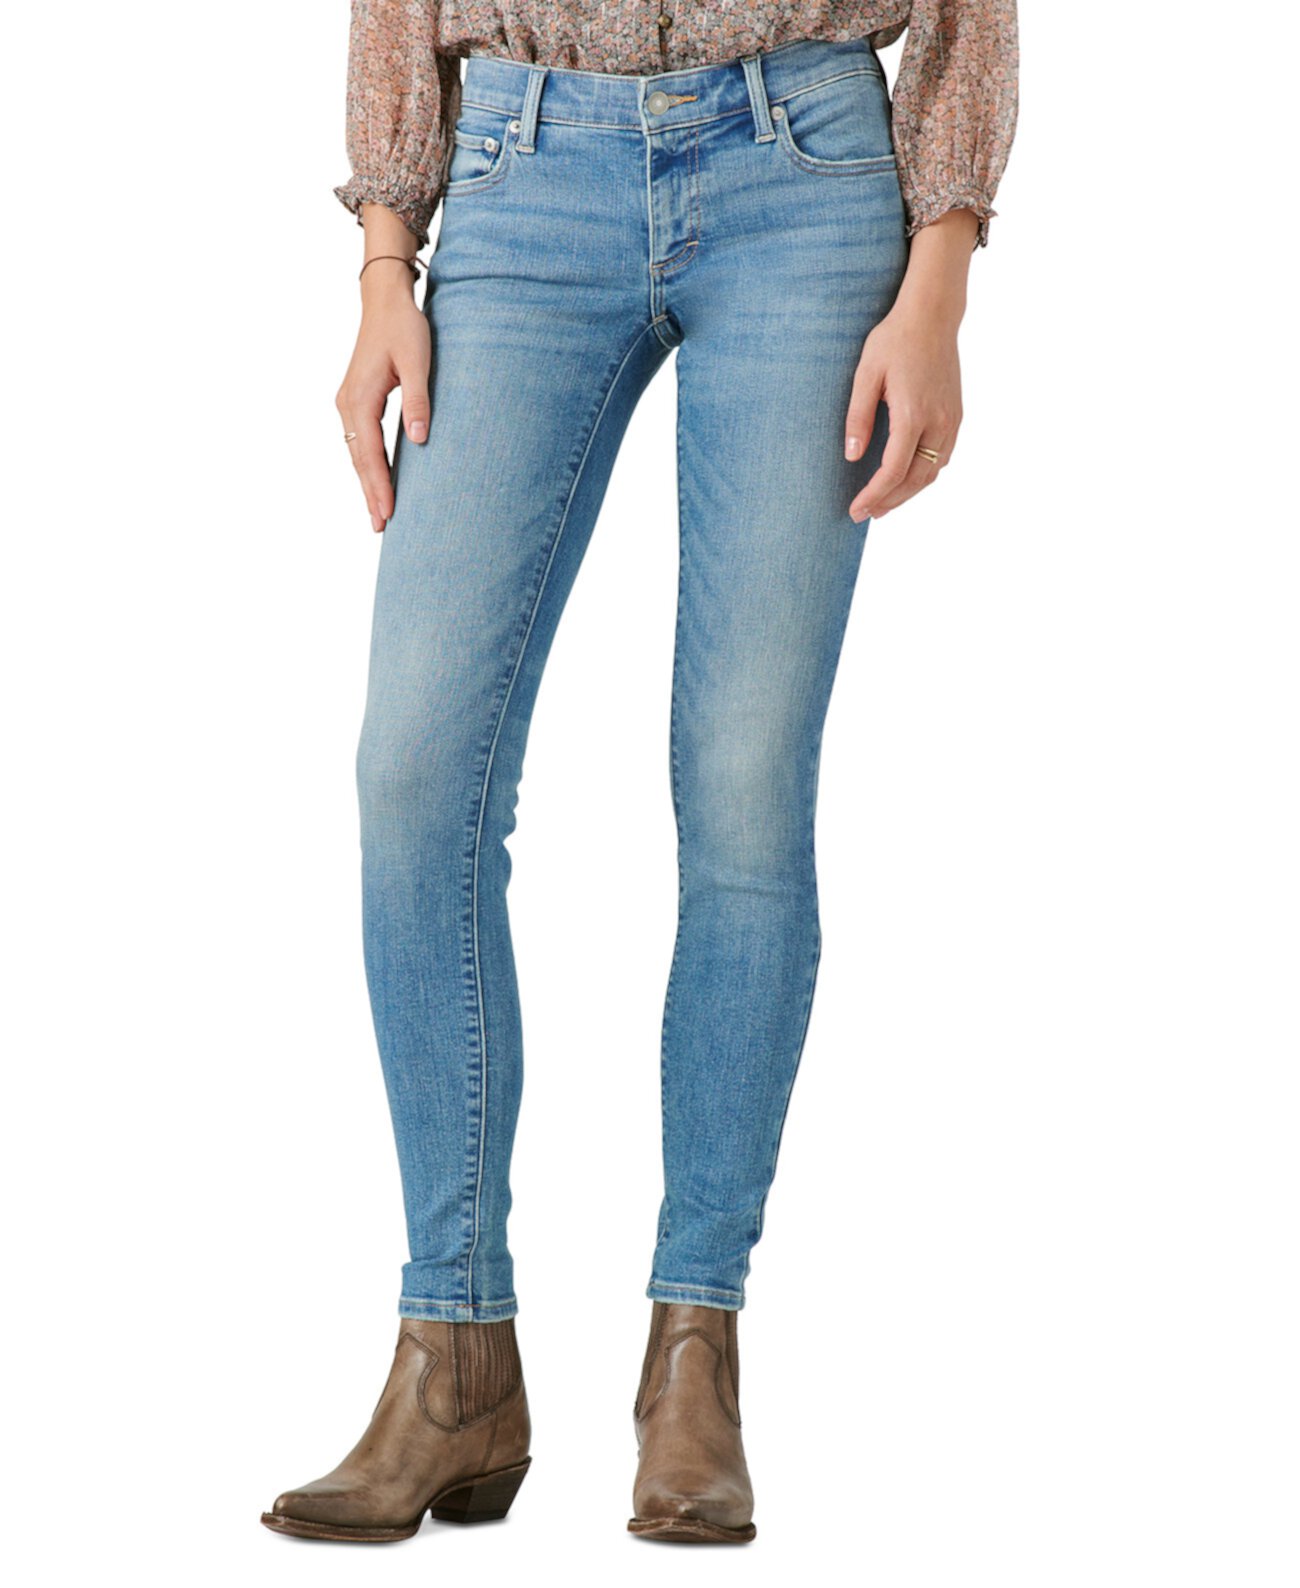 Женские джинсы-скинни Lizzie с низкой посадкой Lucky Brand